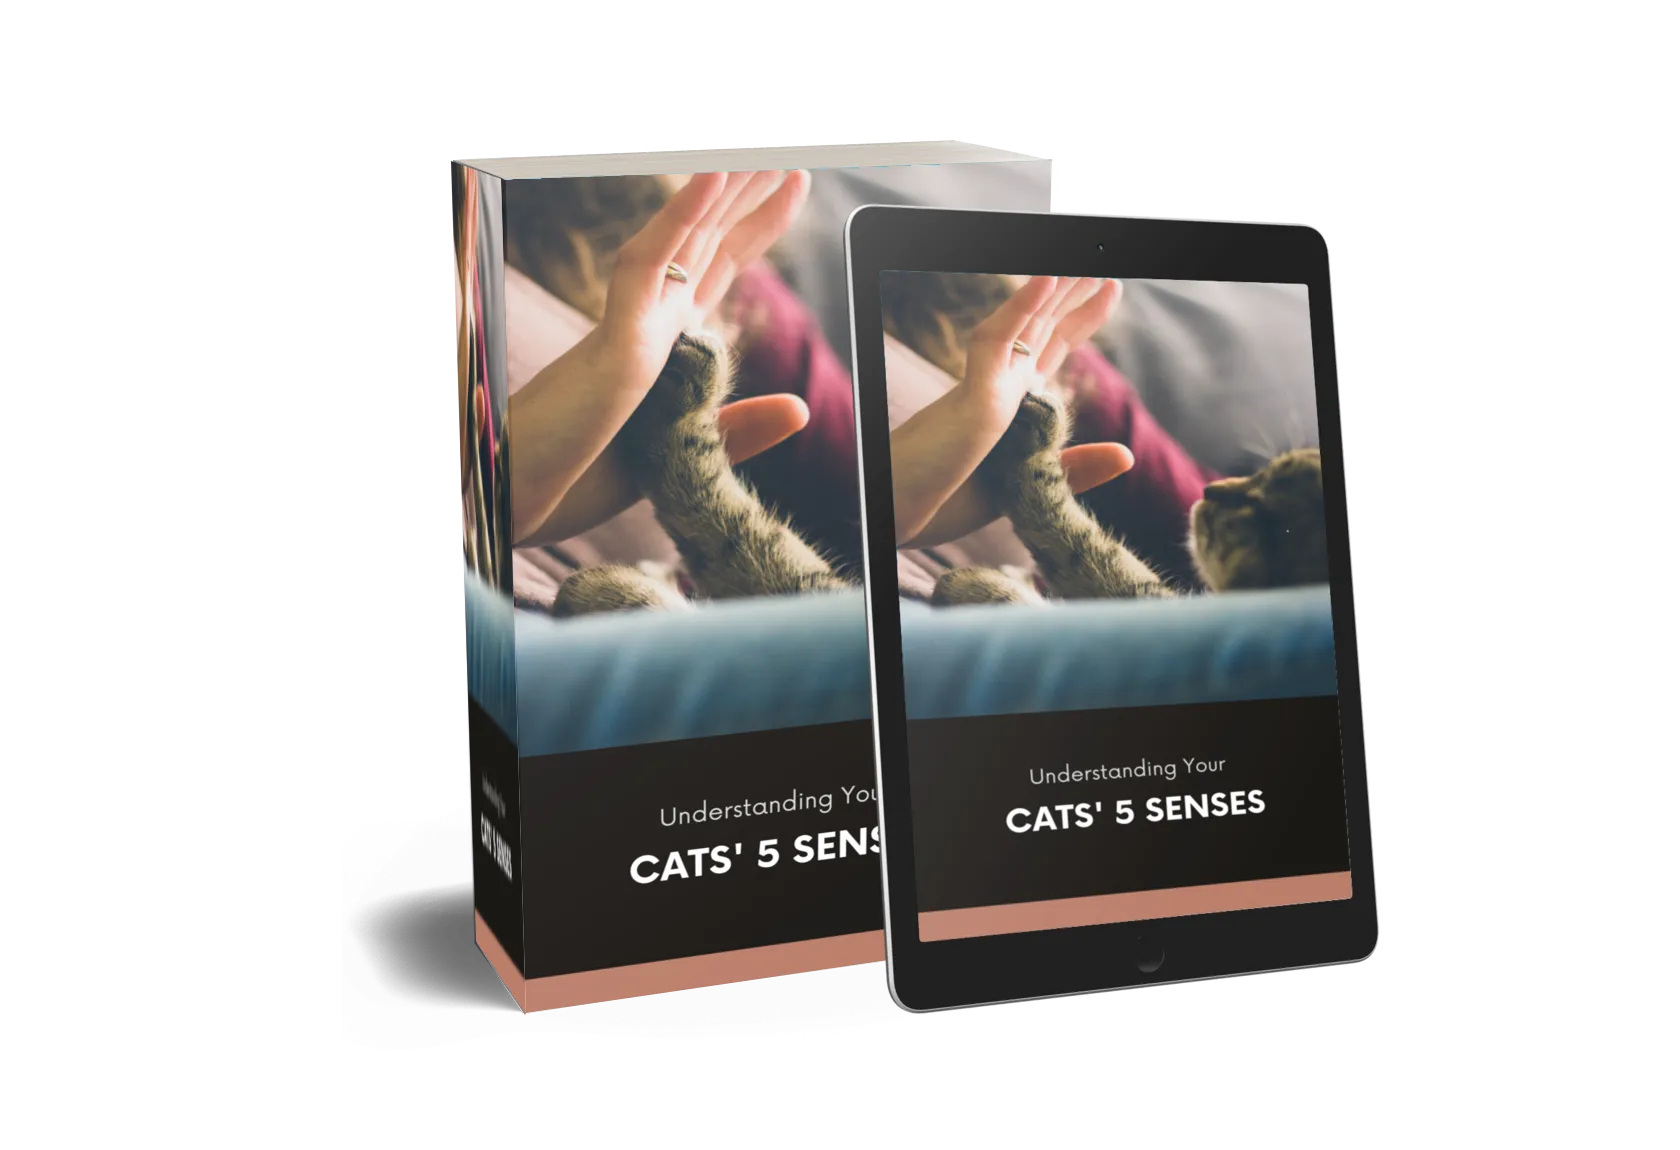 Understanding Your Cats' 5 Senses